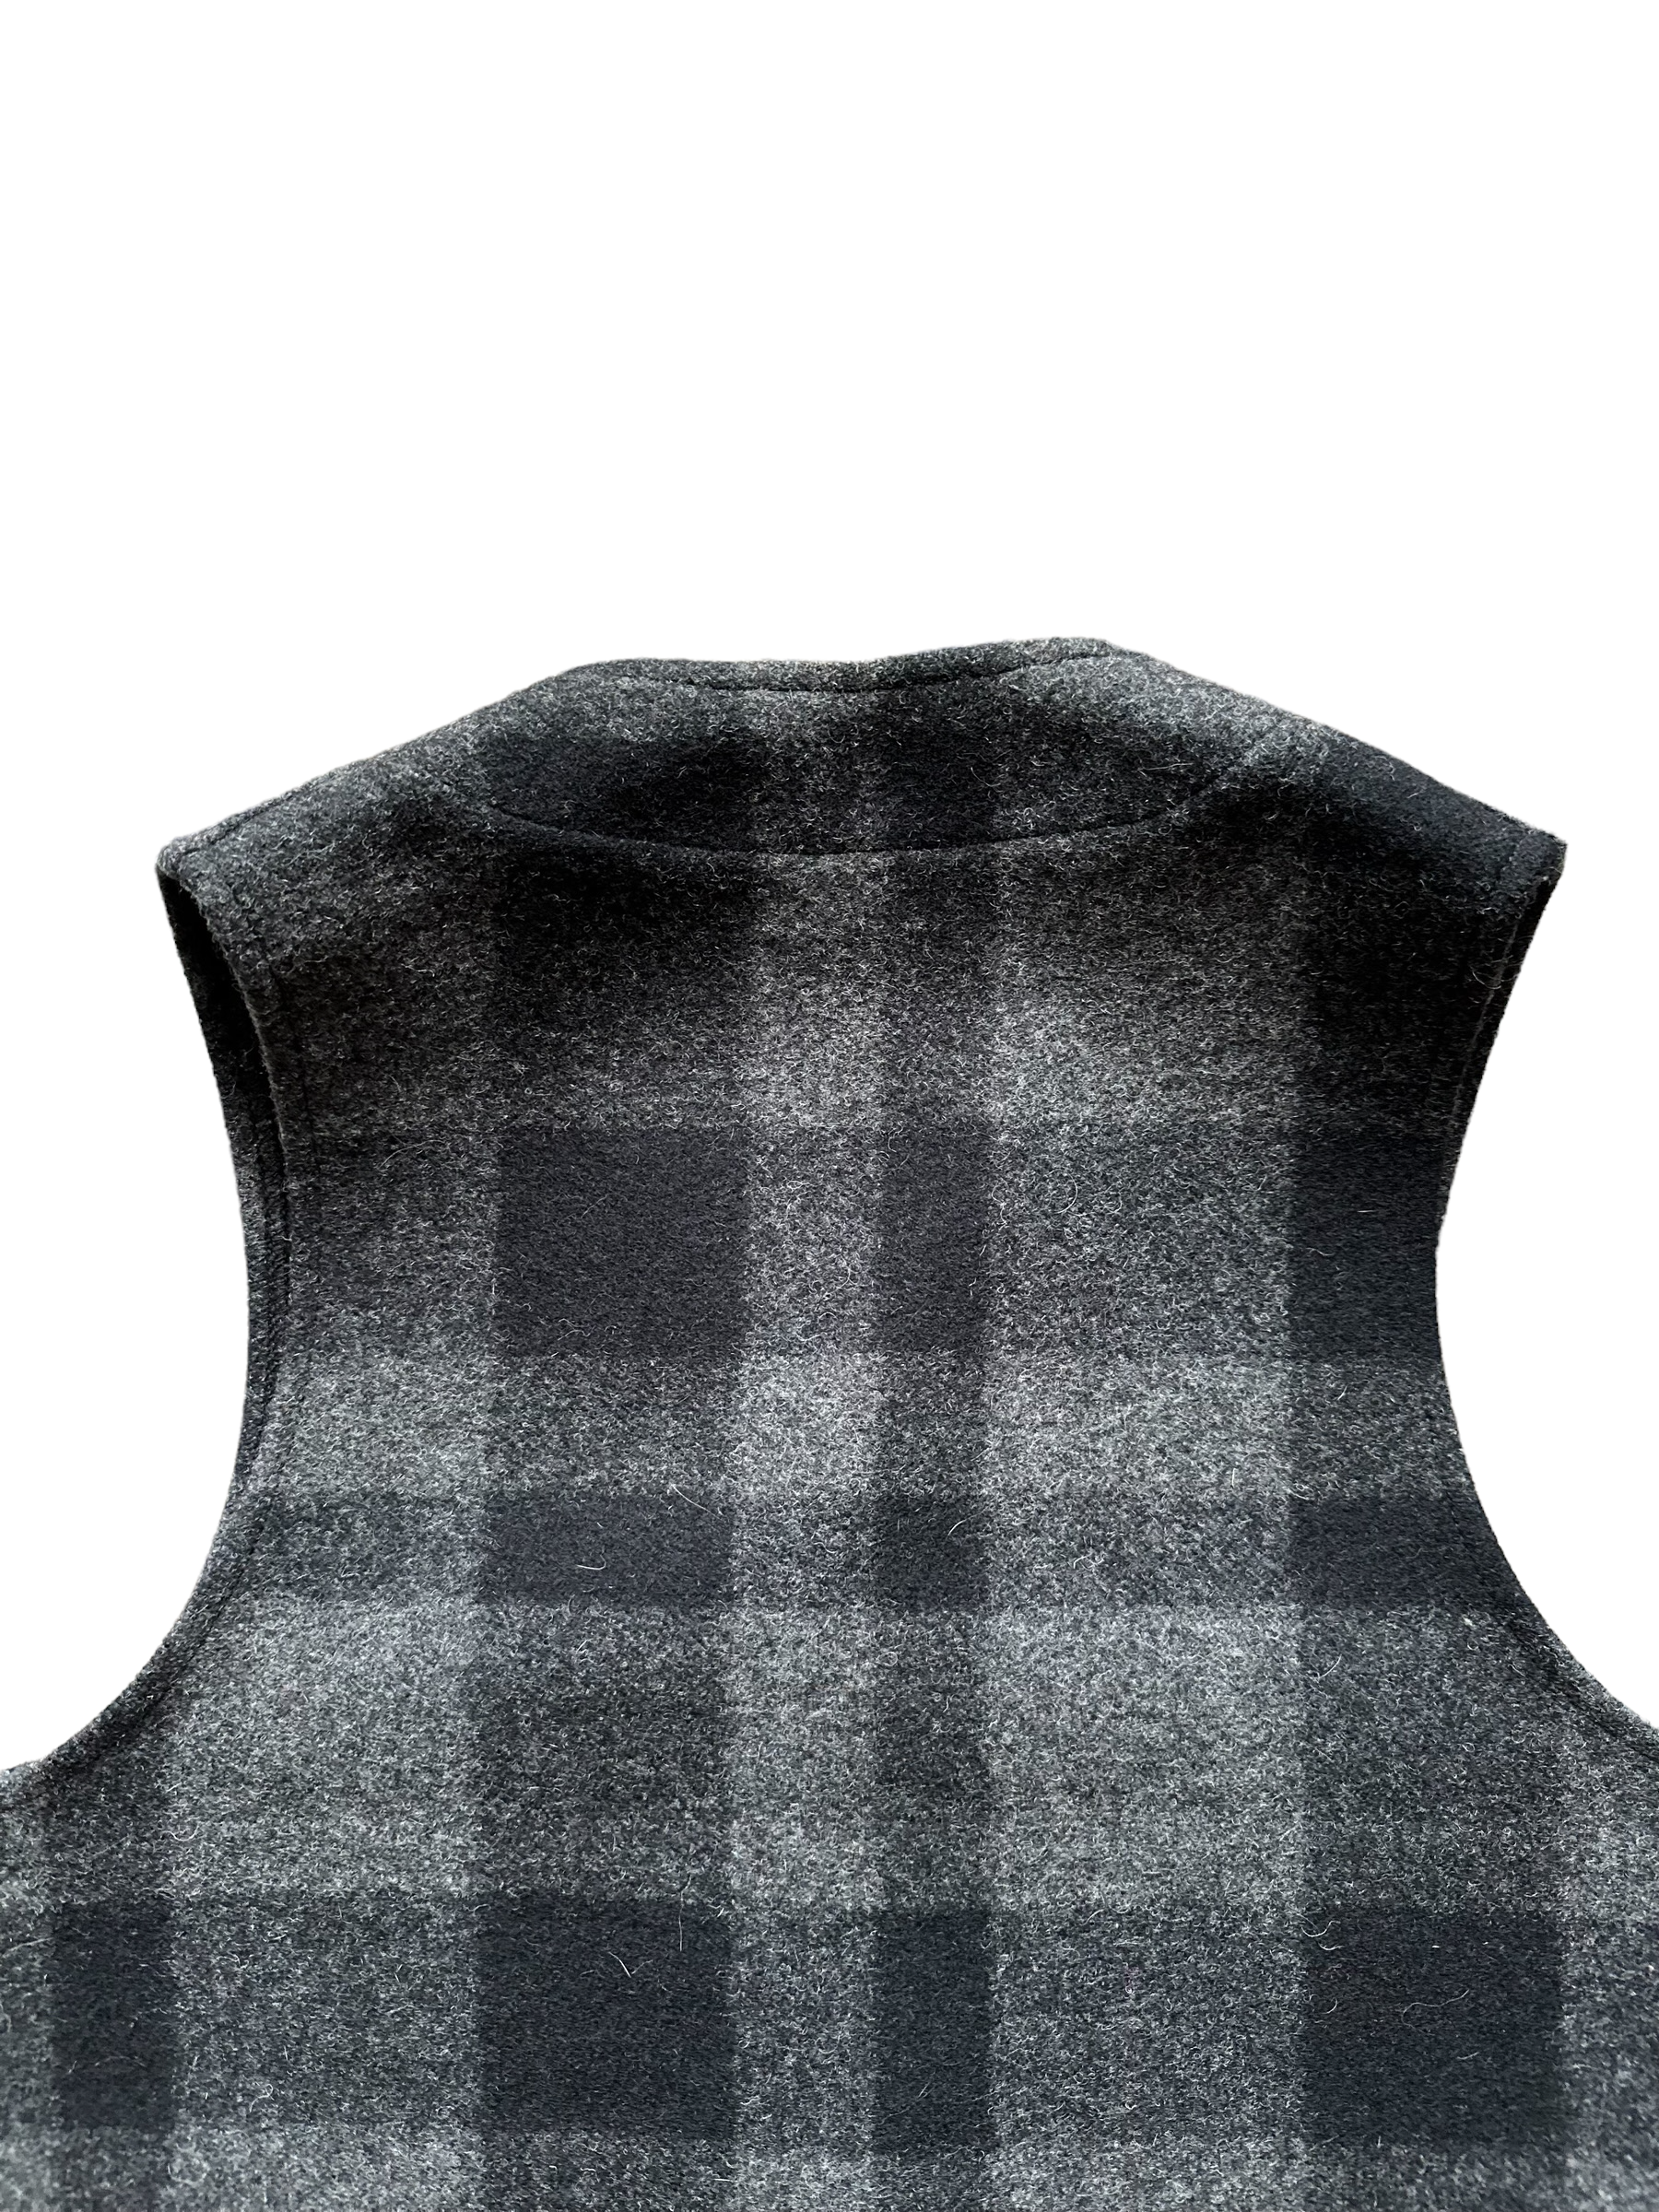 Upper Rear View of Vintage Filson Mackinaw Vest SZ 36 |  Charcoal & Black Mackinaw Wool | Filson Seattle Workwear